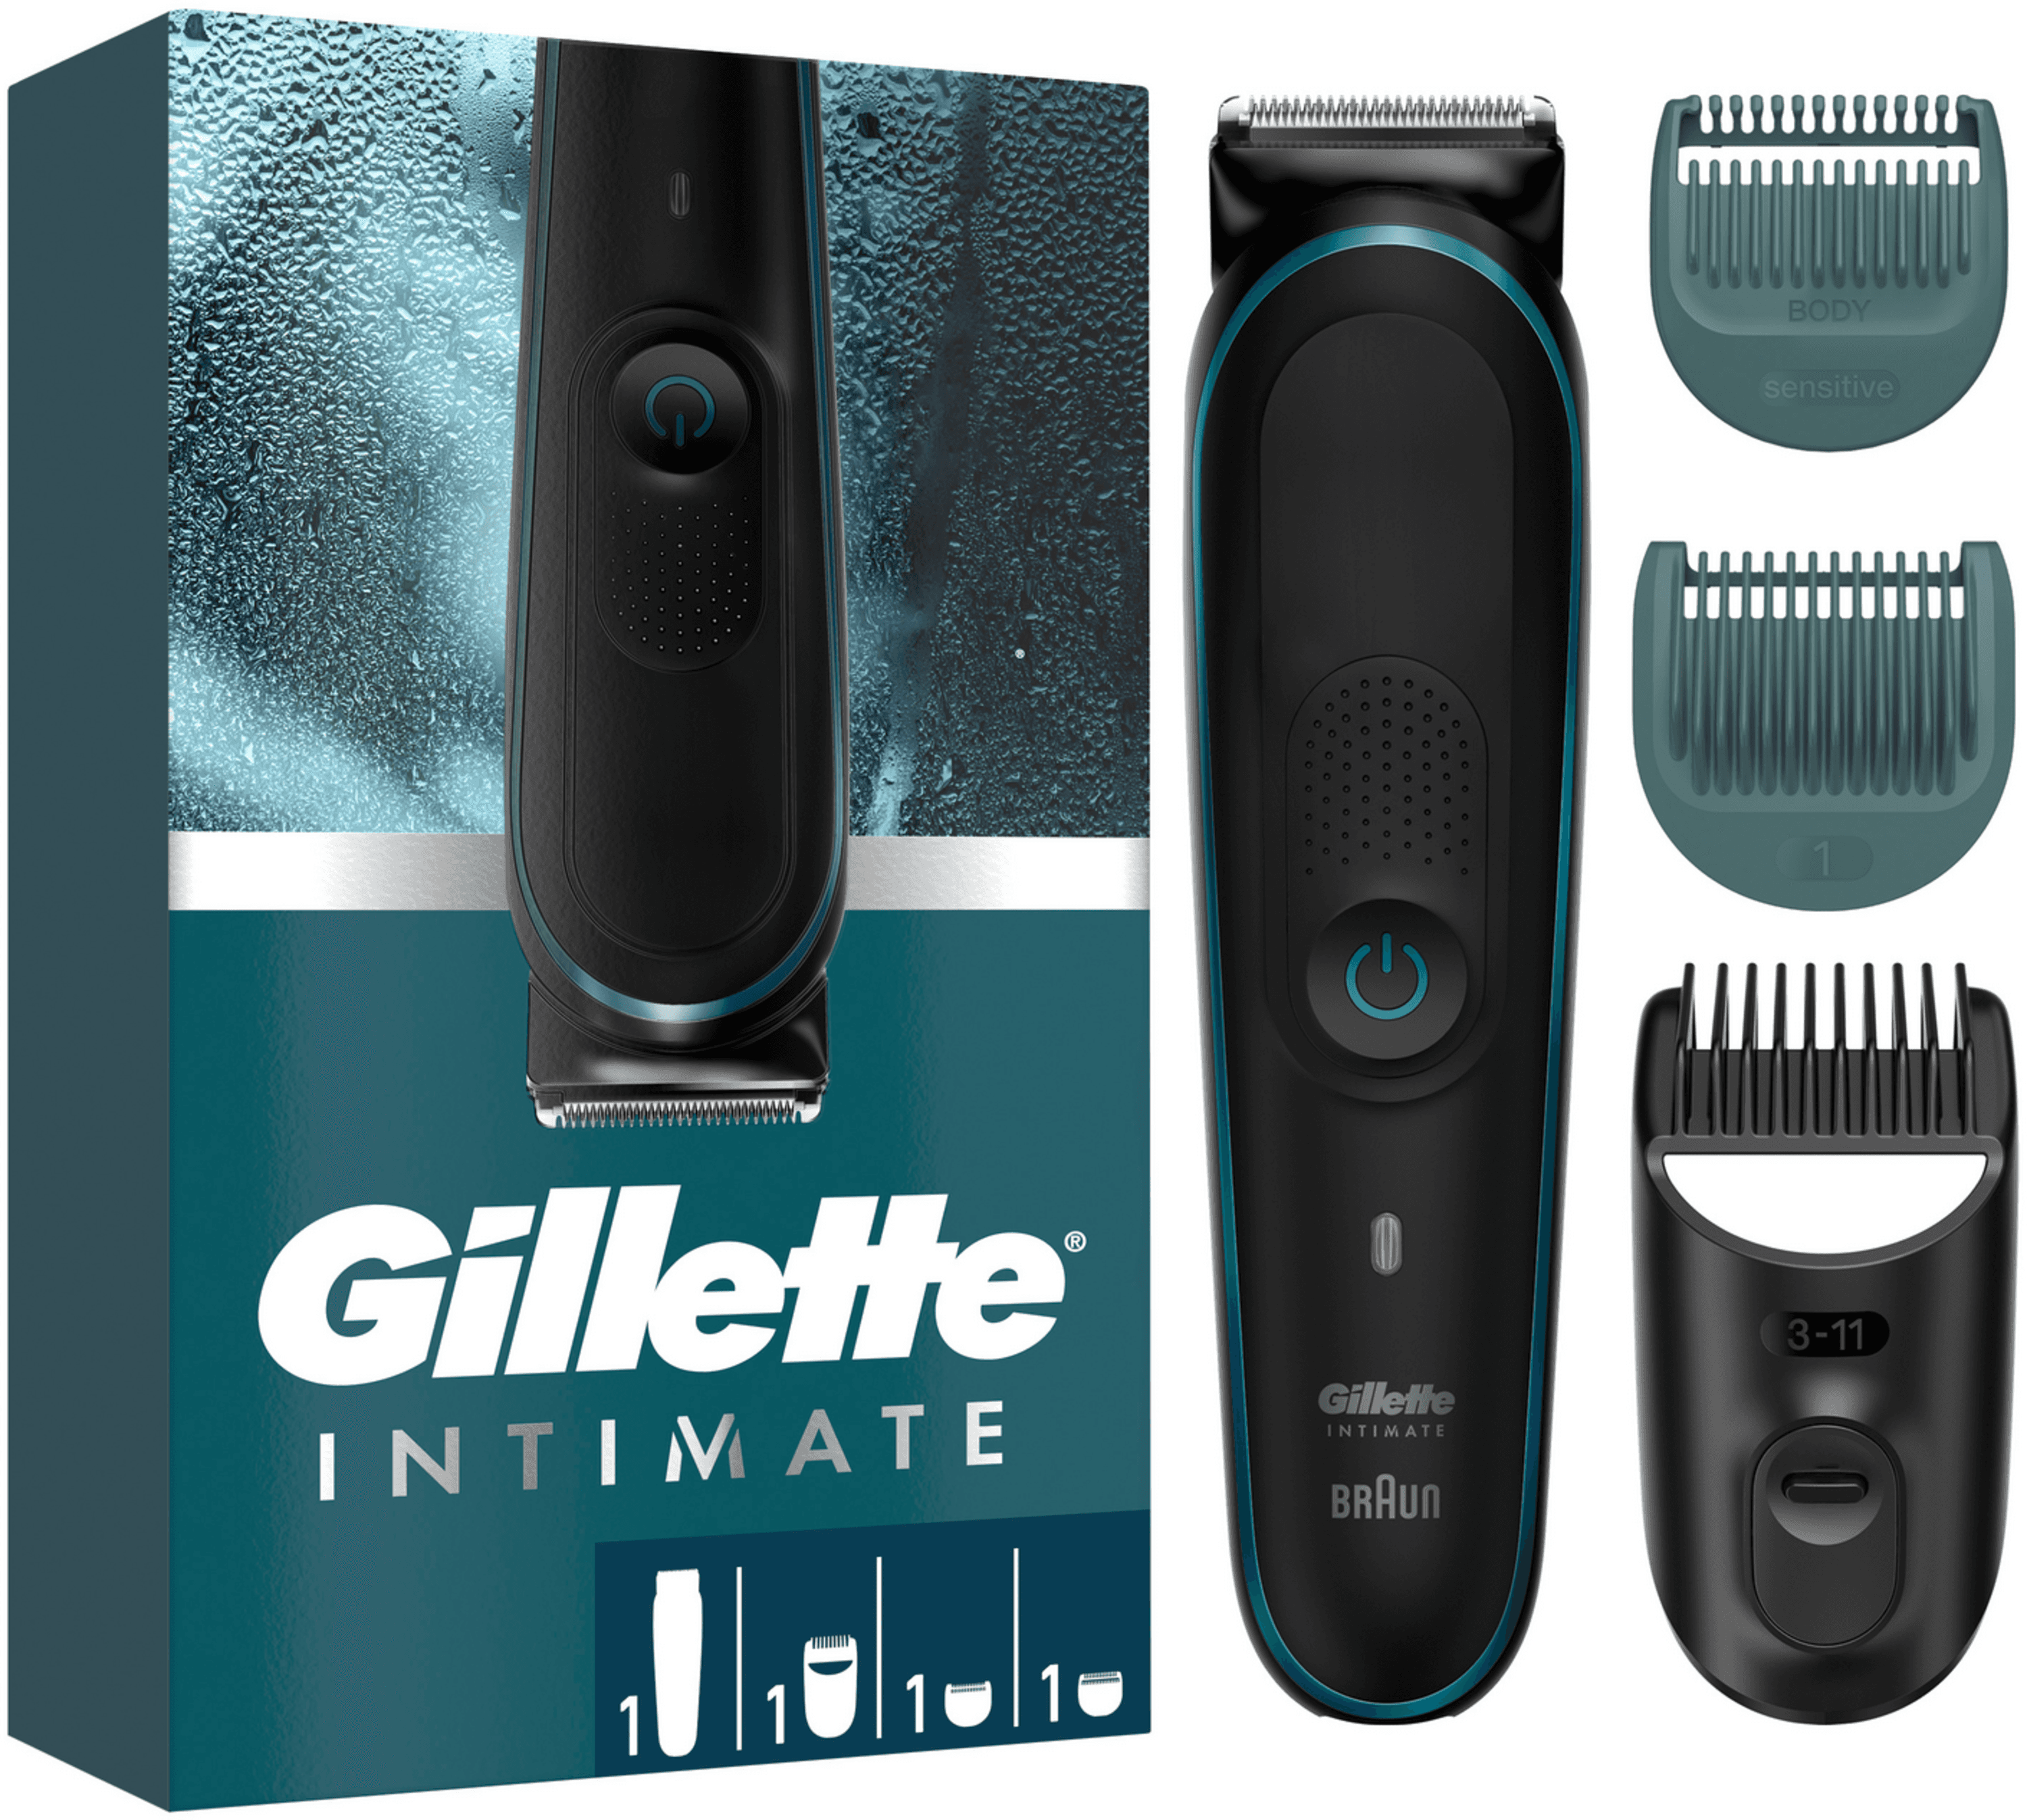 Gillette - Intimate Elektrischer Trimmer i5